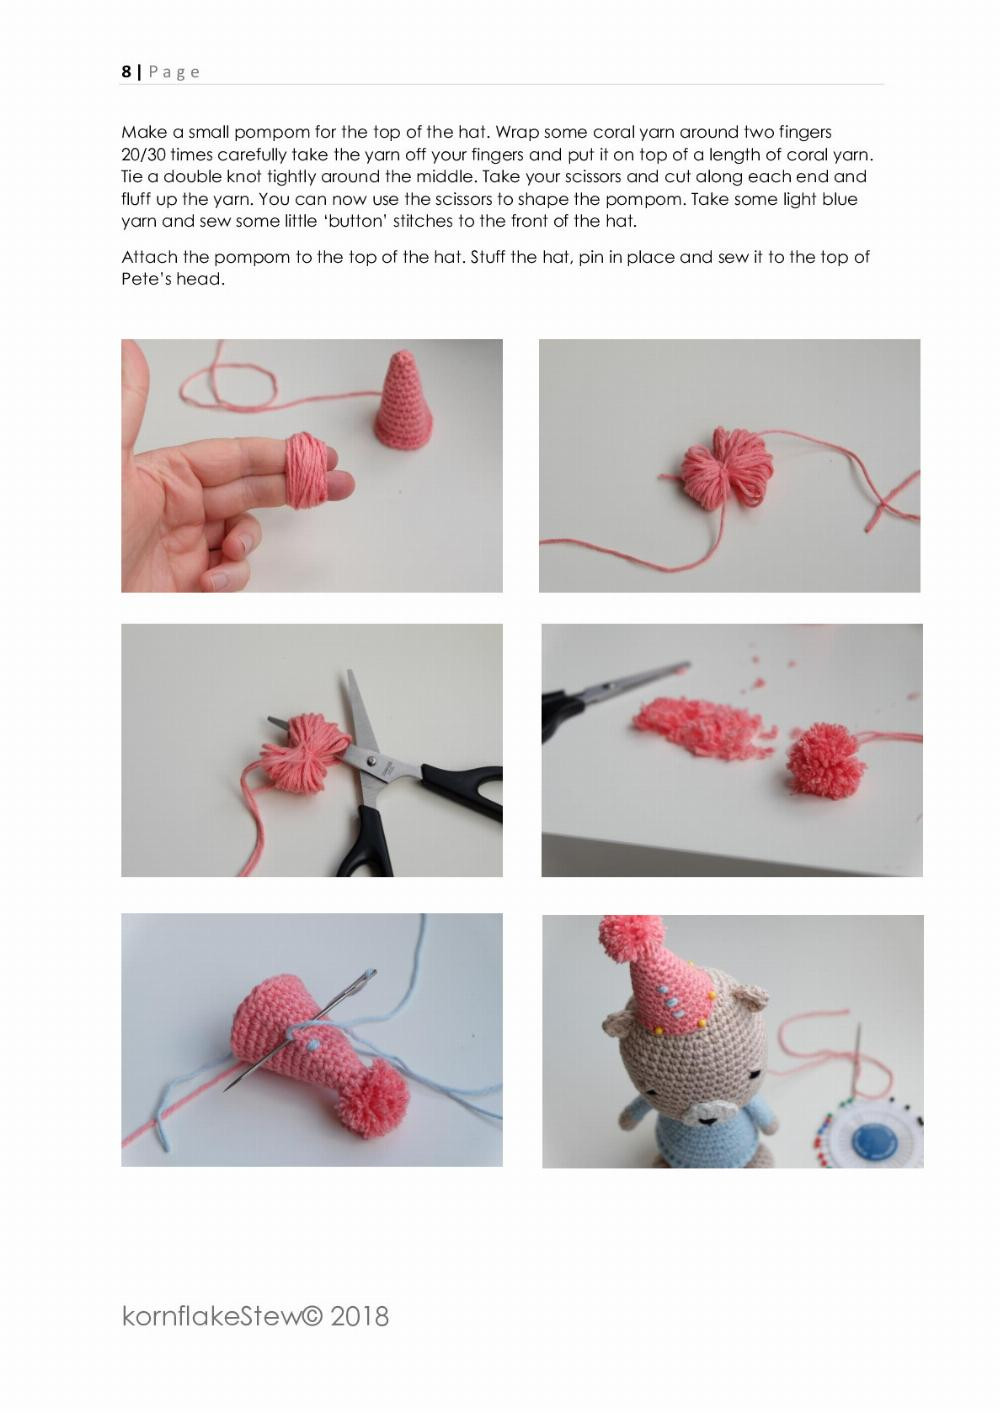 pete the bear crochet pattern